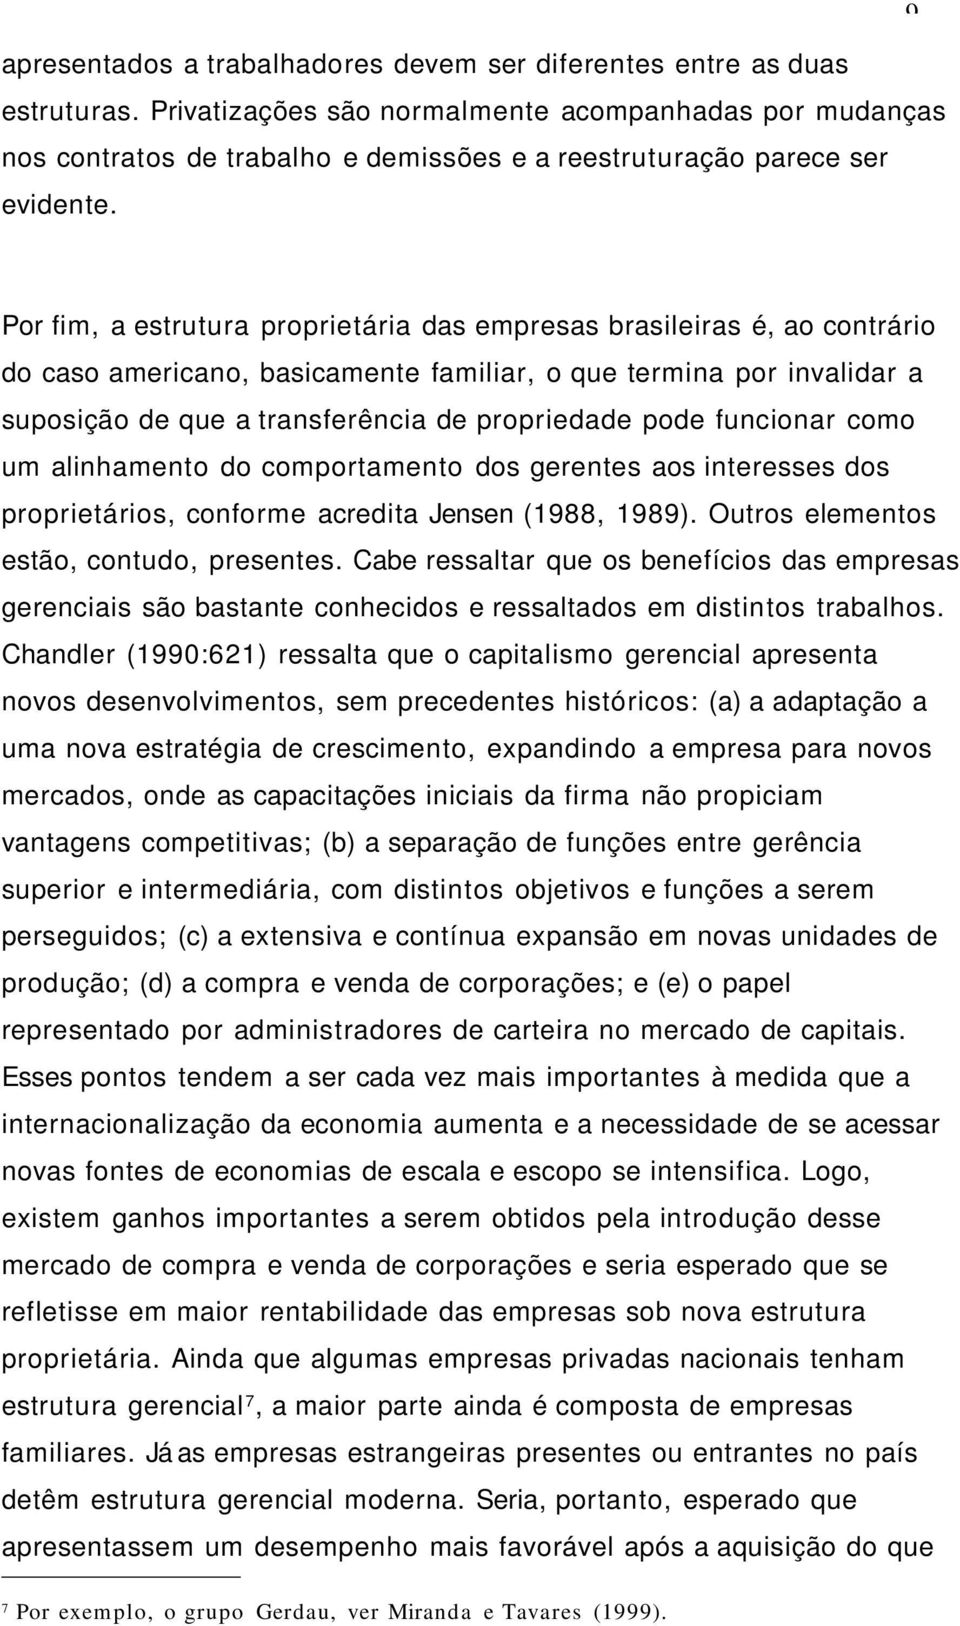 Por fim, a estrutura proprietária das empresas brasileiras é, ao contrário do caso americano, basicamente familiar, o que termina por invalidar a suposição de que a transferência de propriedade pode